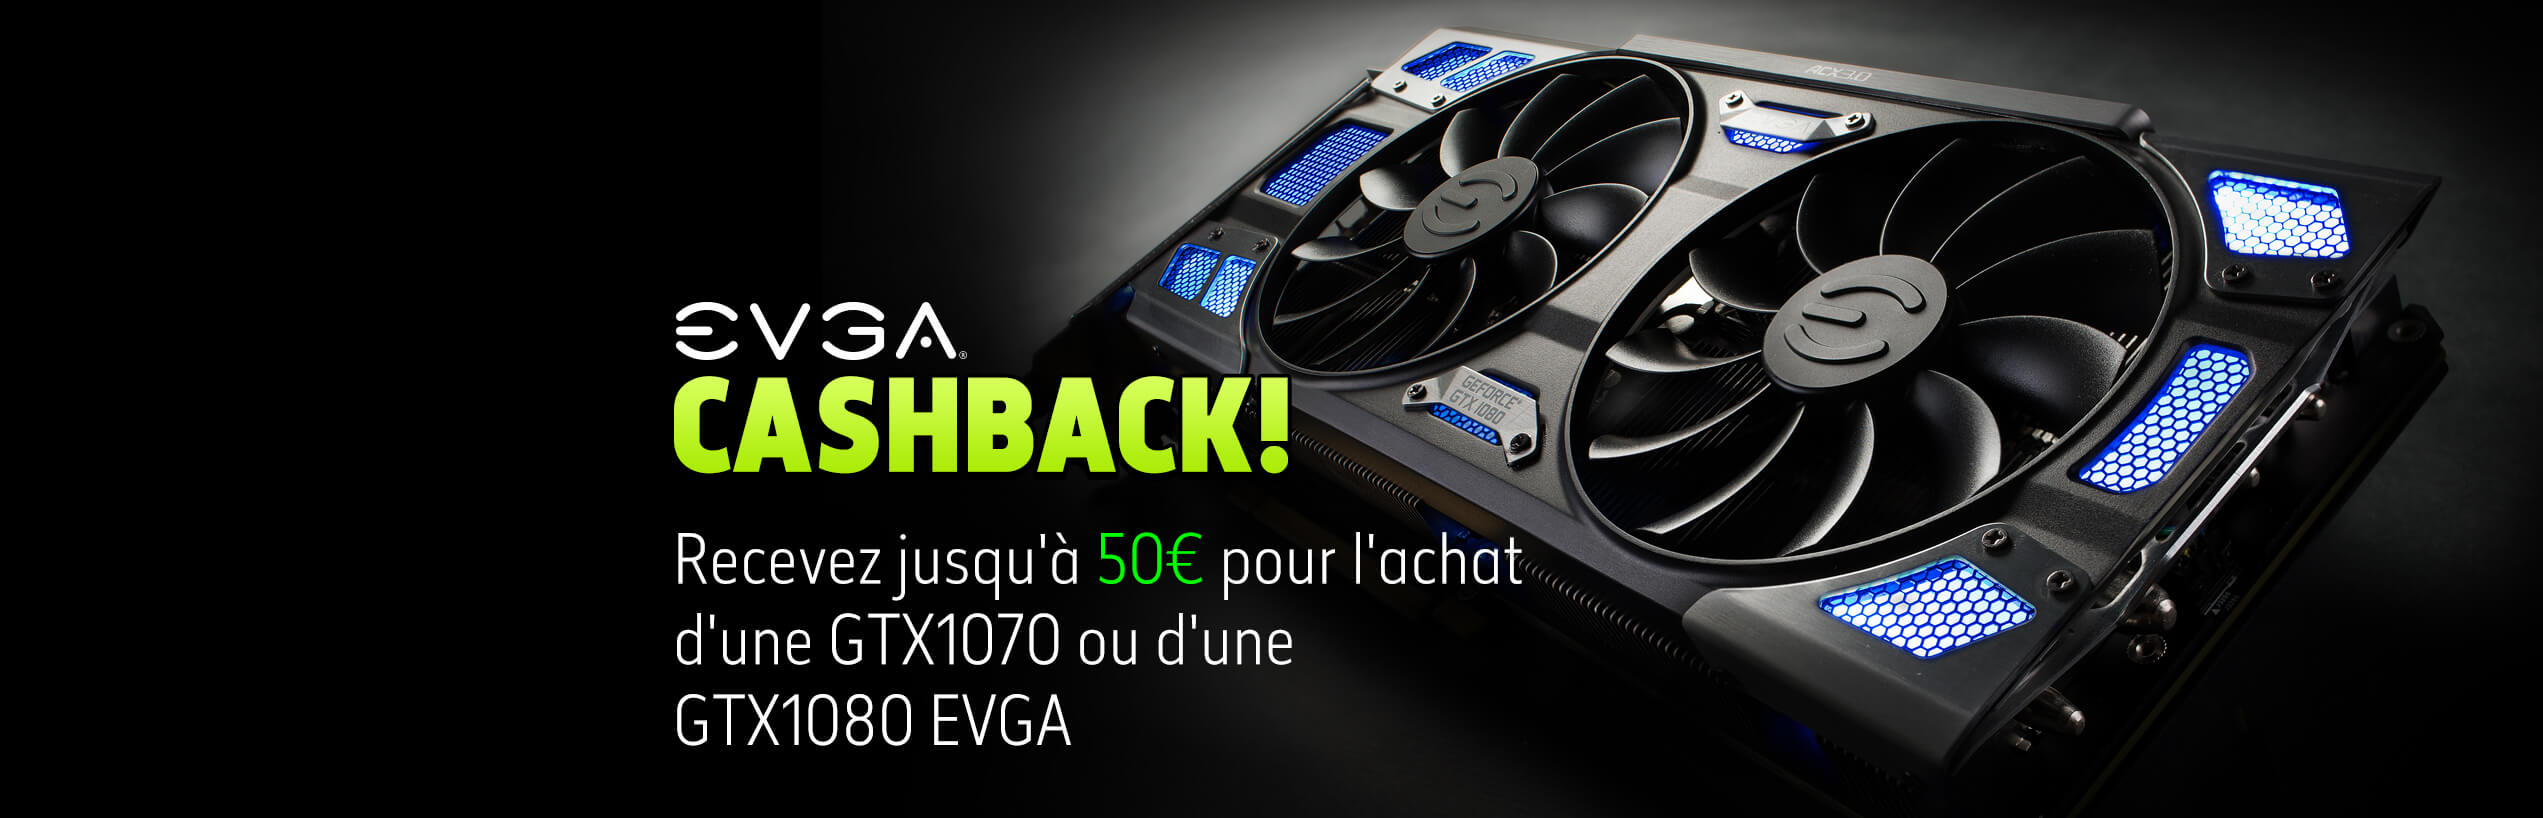 Cashback on EVGA GeForce GTX 1070 or 1080 Graphics Cards